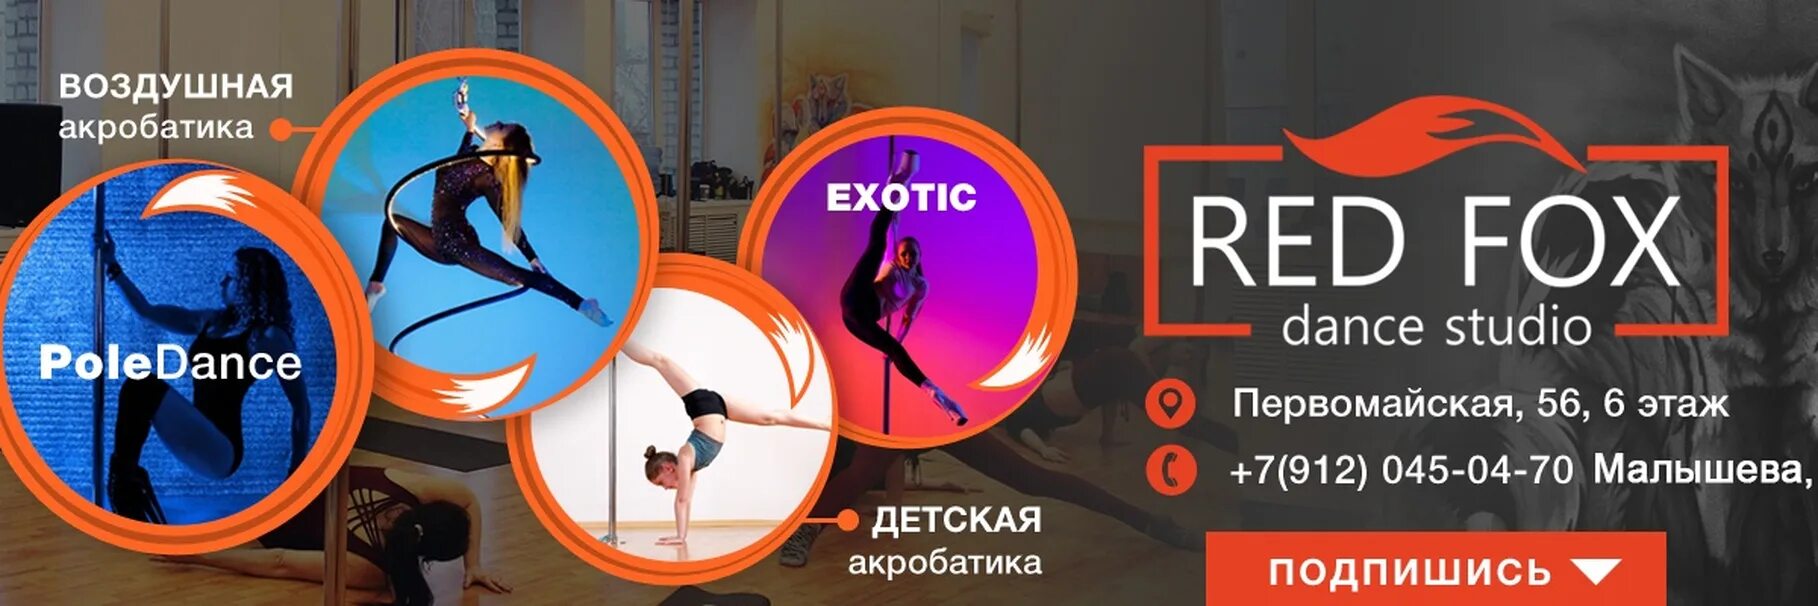 Fox екатеринбург. Red школа танцев. REDFOX Екатеринбург. Red Fox студия танца. Red Fox Екатеринбург танцы ВК.